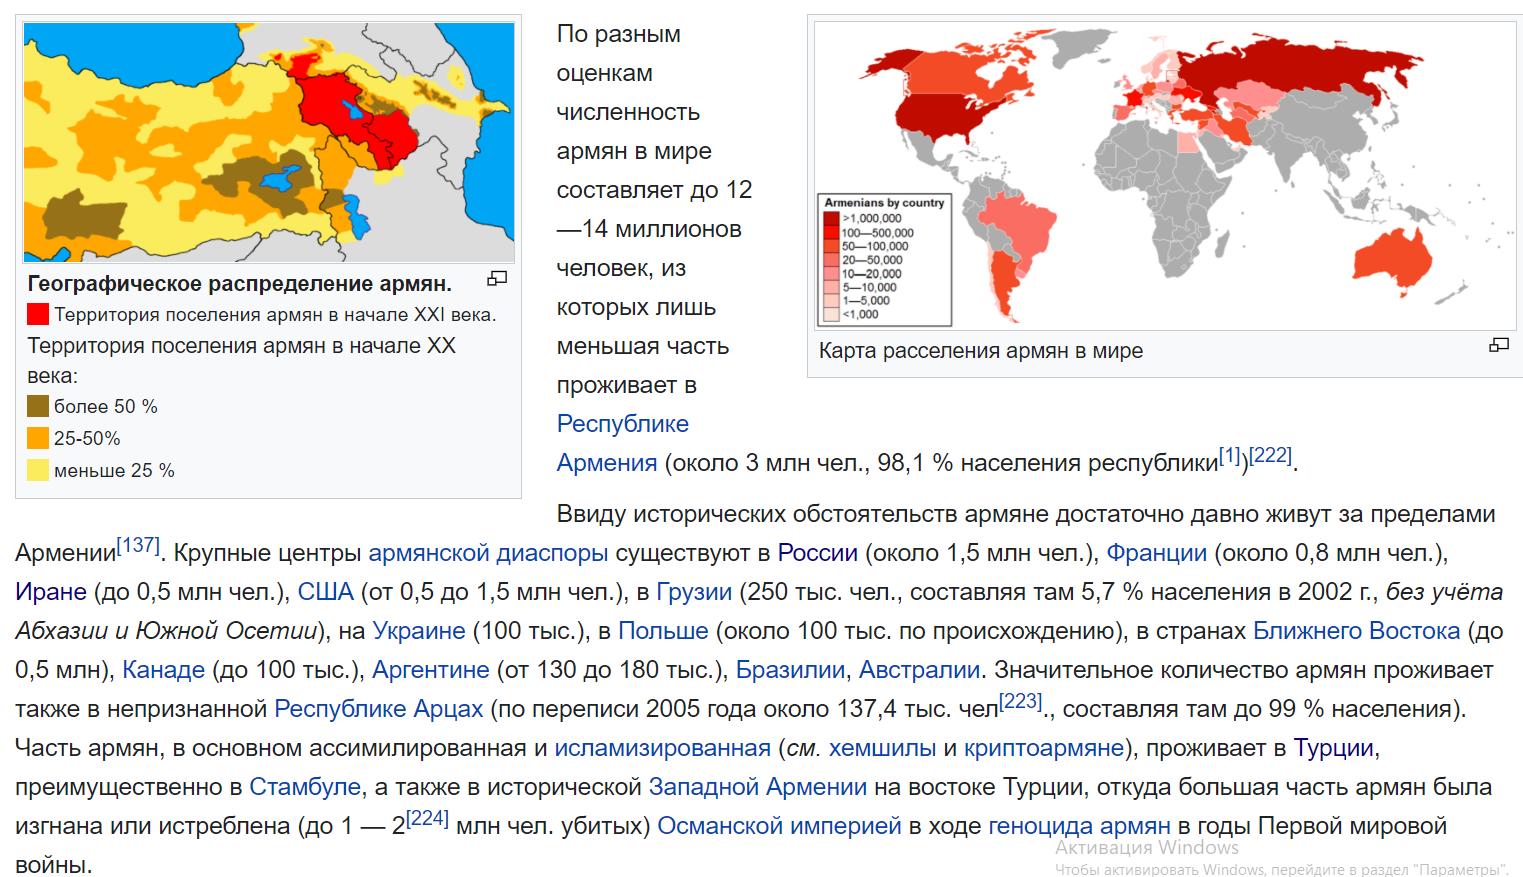 Численность населения армян